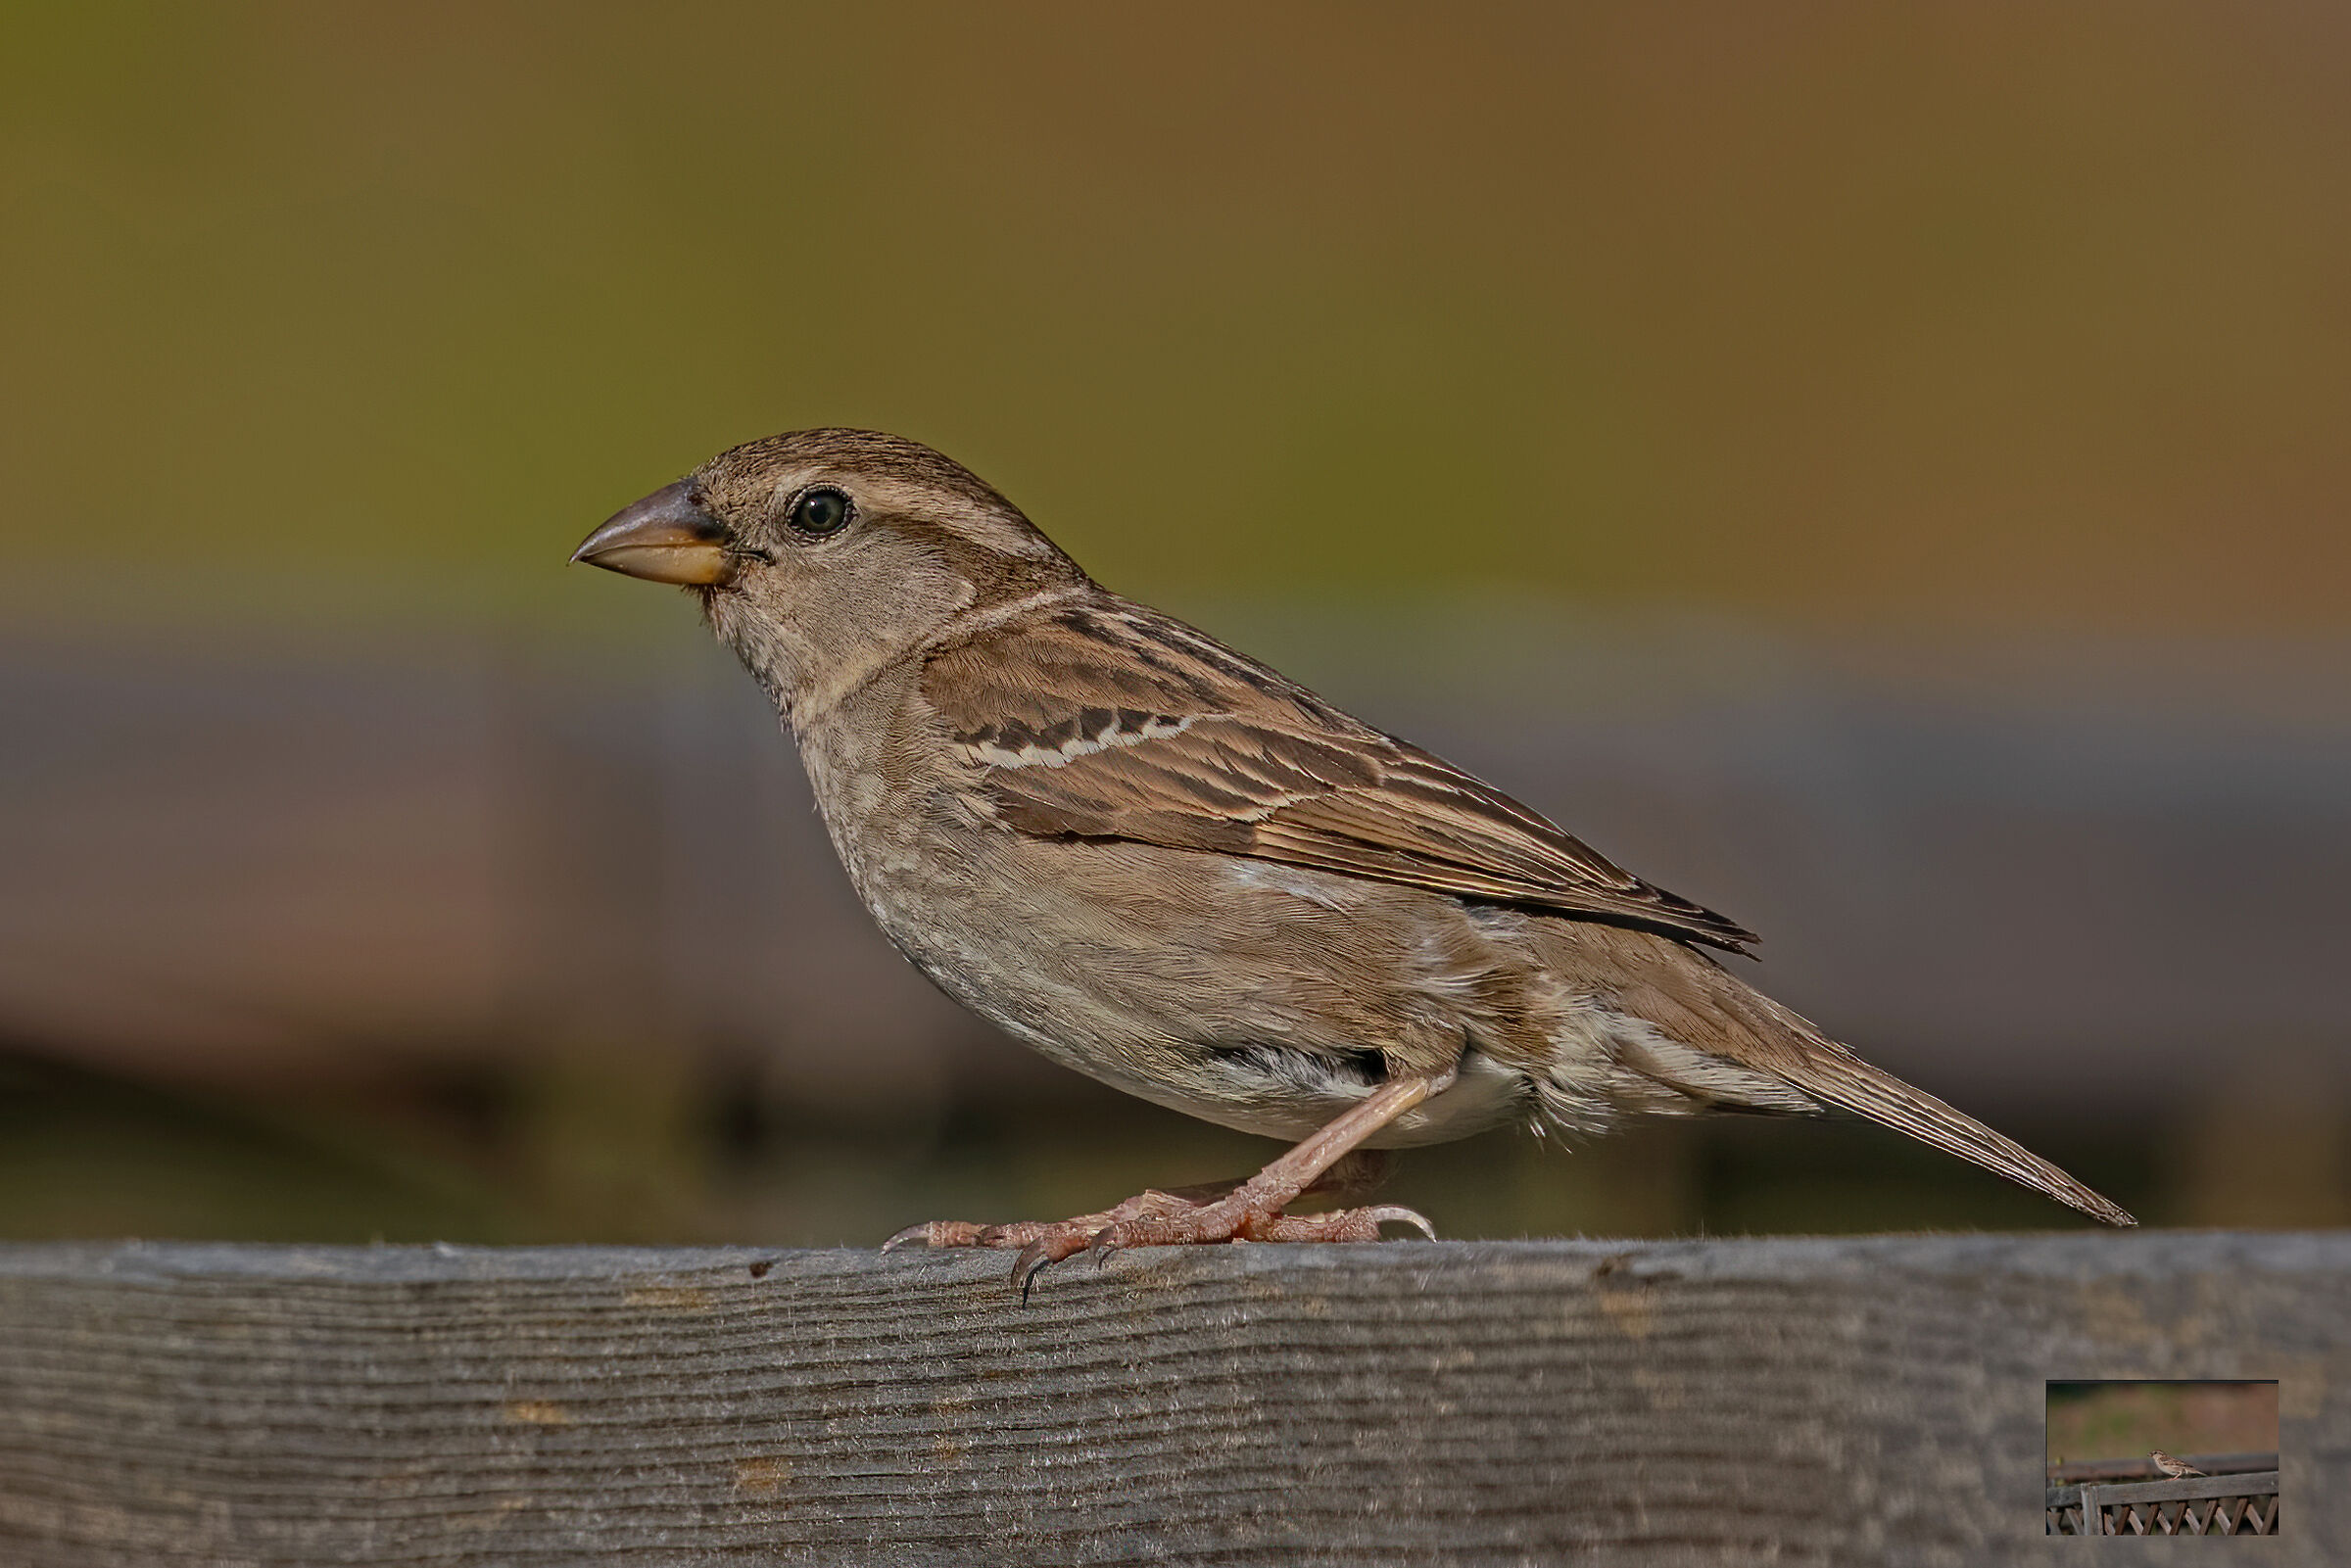 Sparrow on the fence...